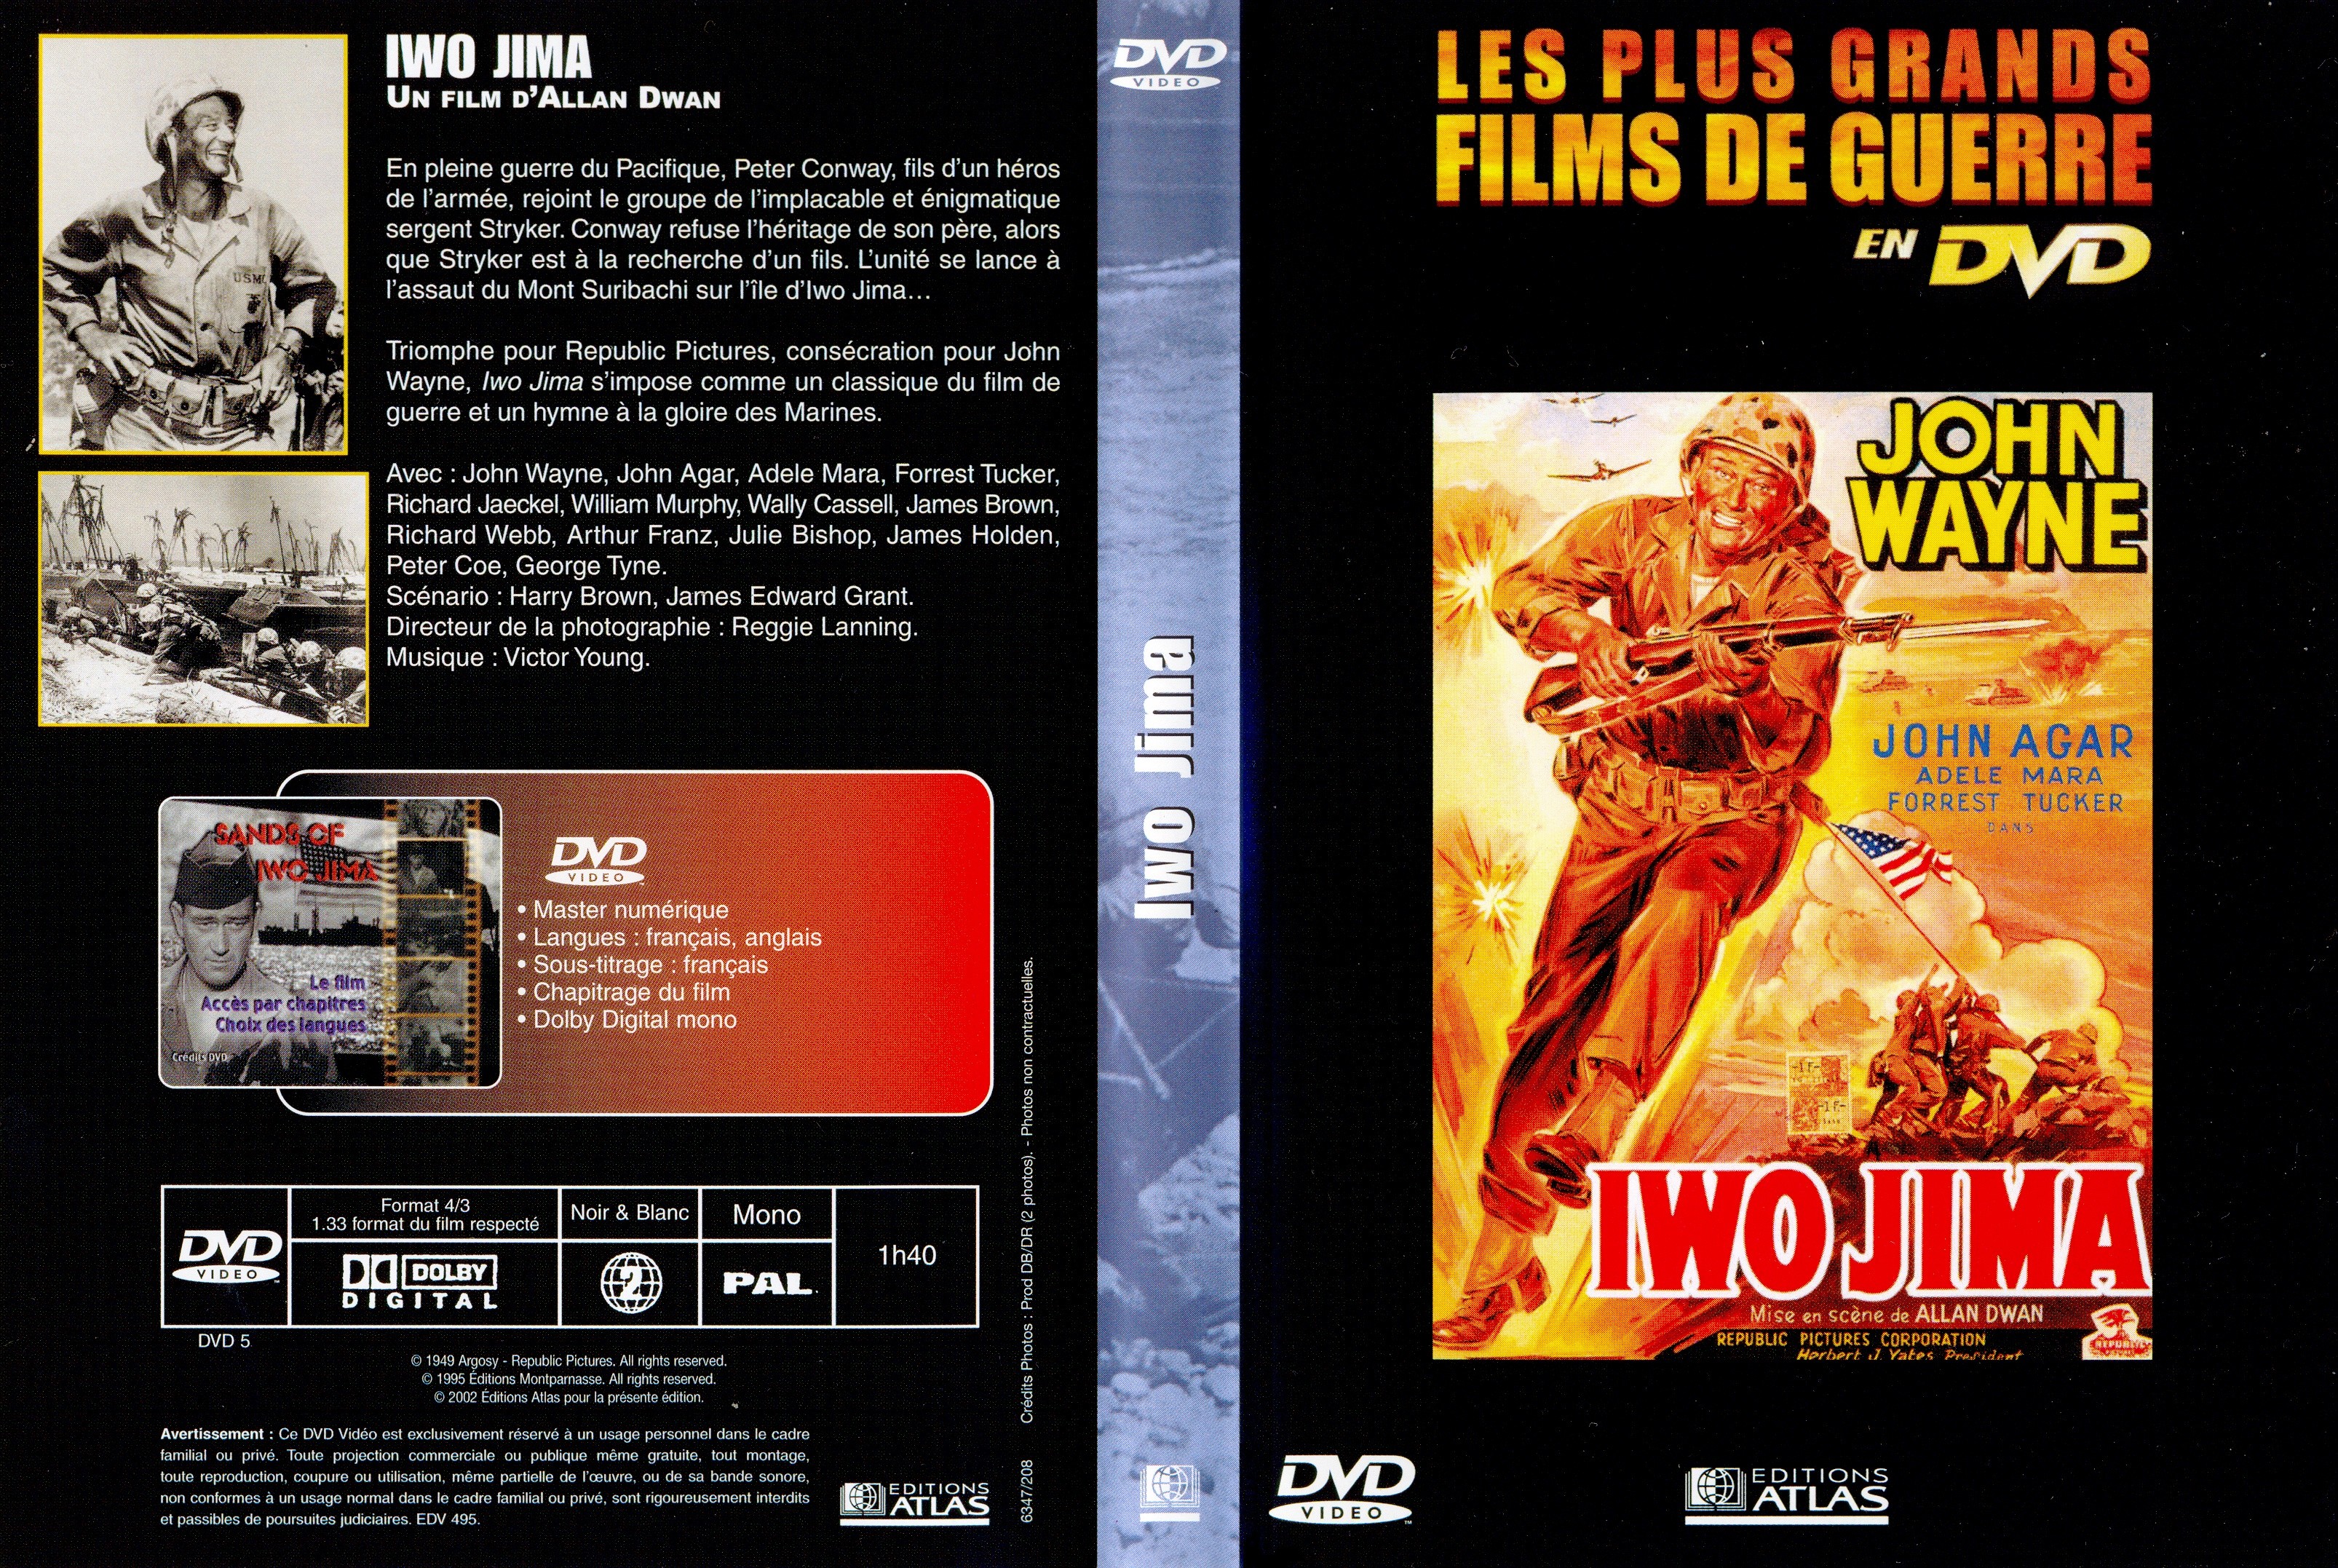 Jaquette DVD Iwo Jima